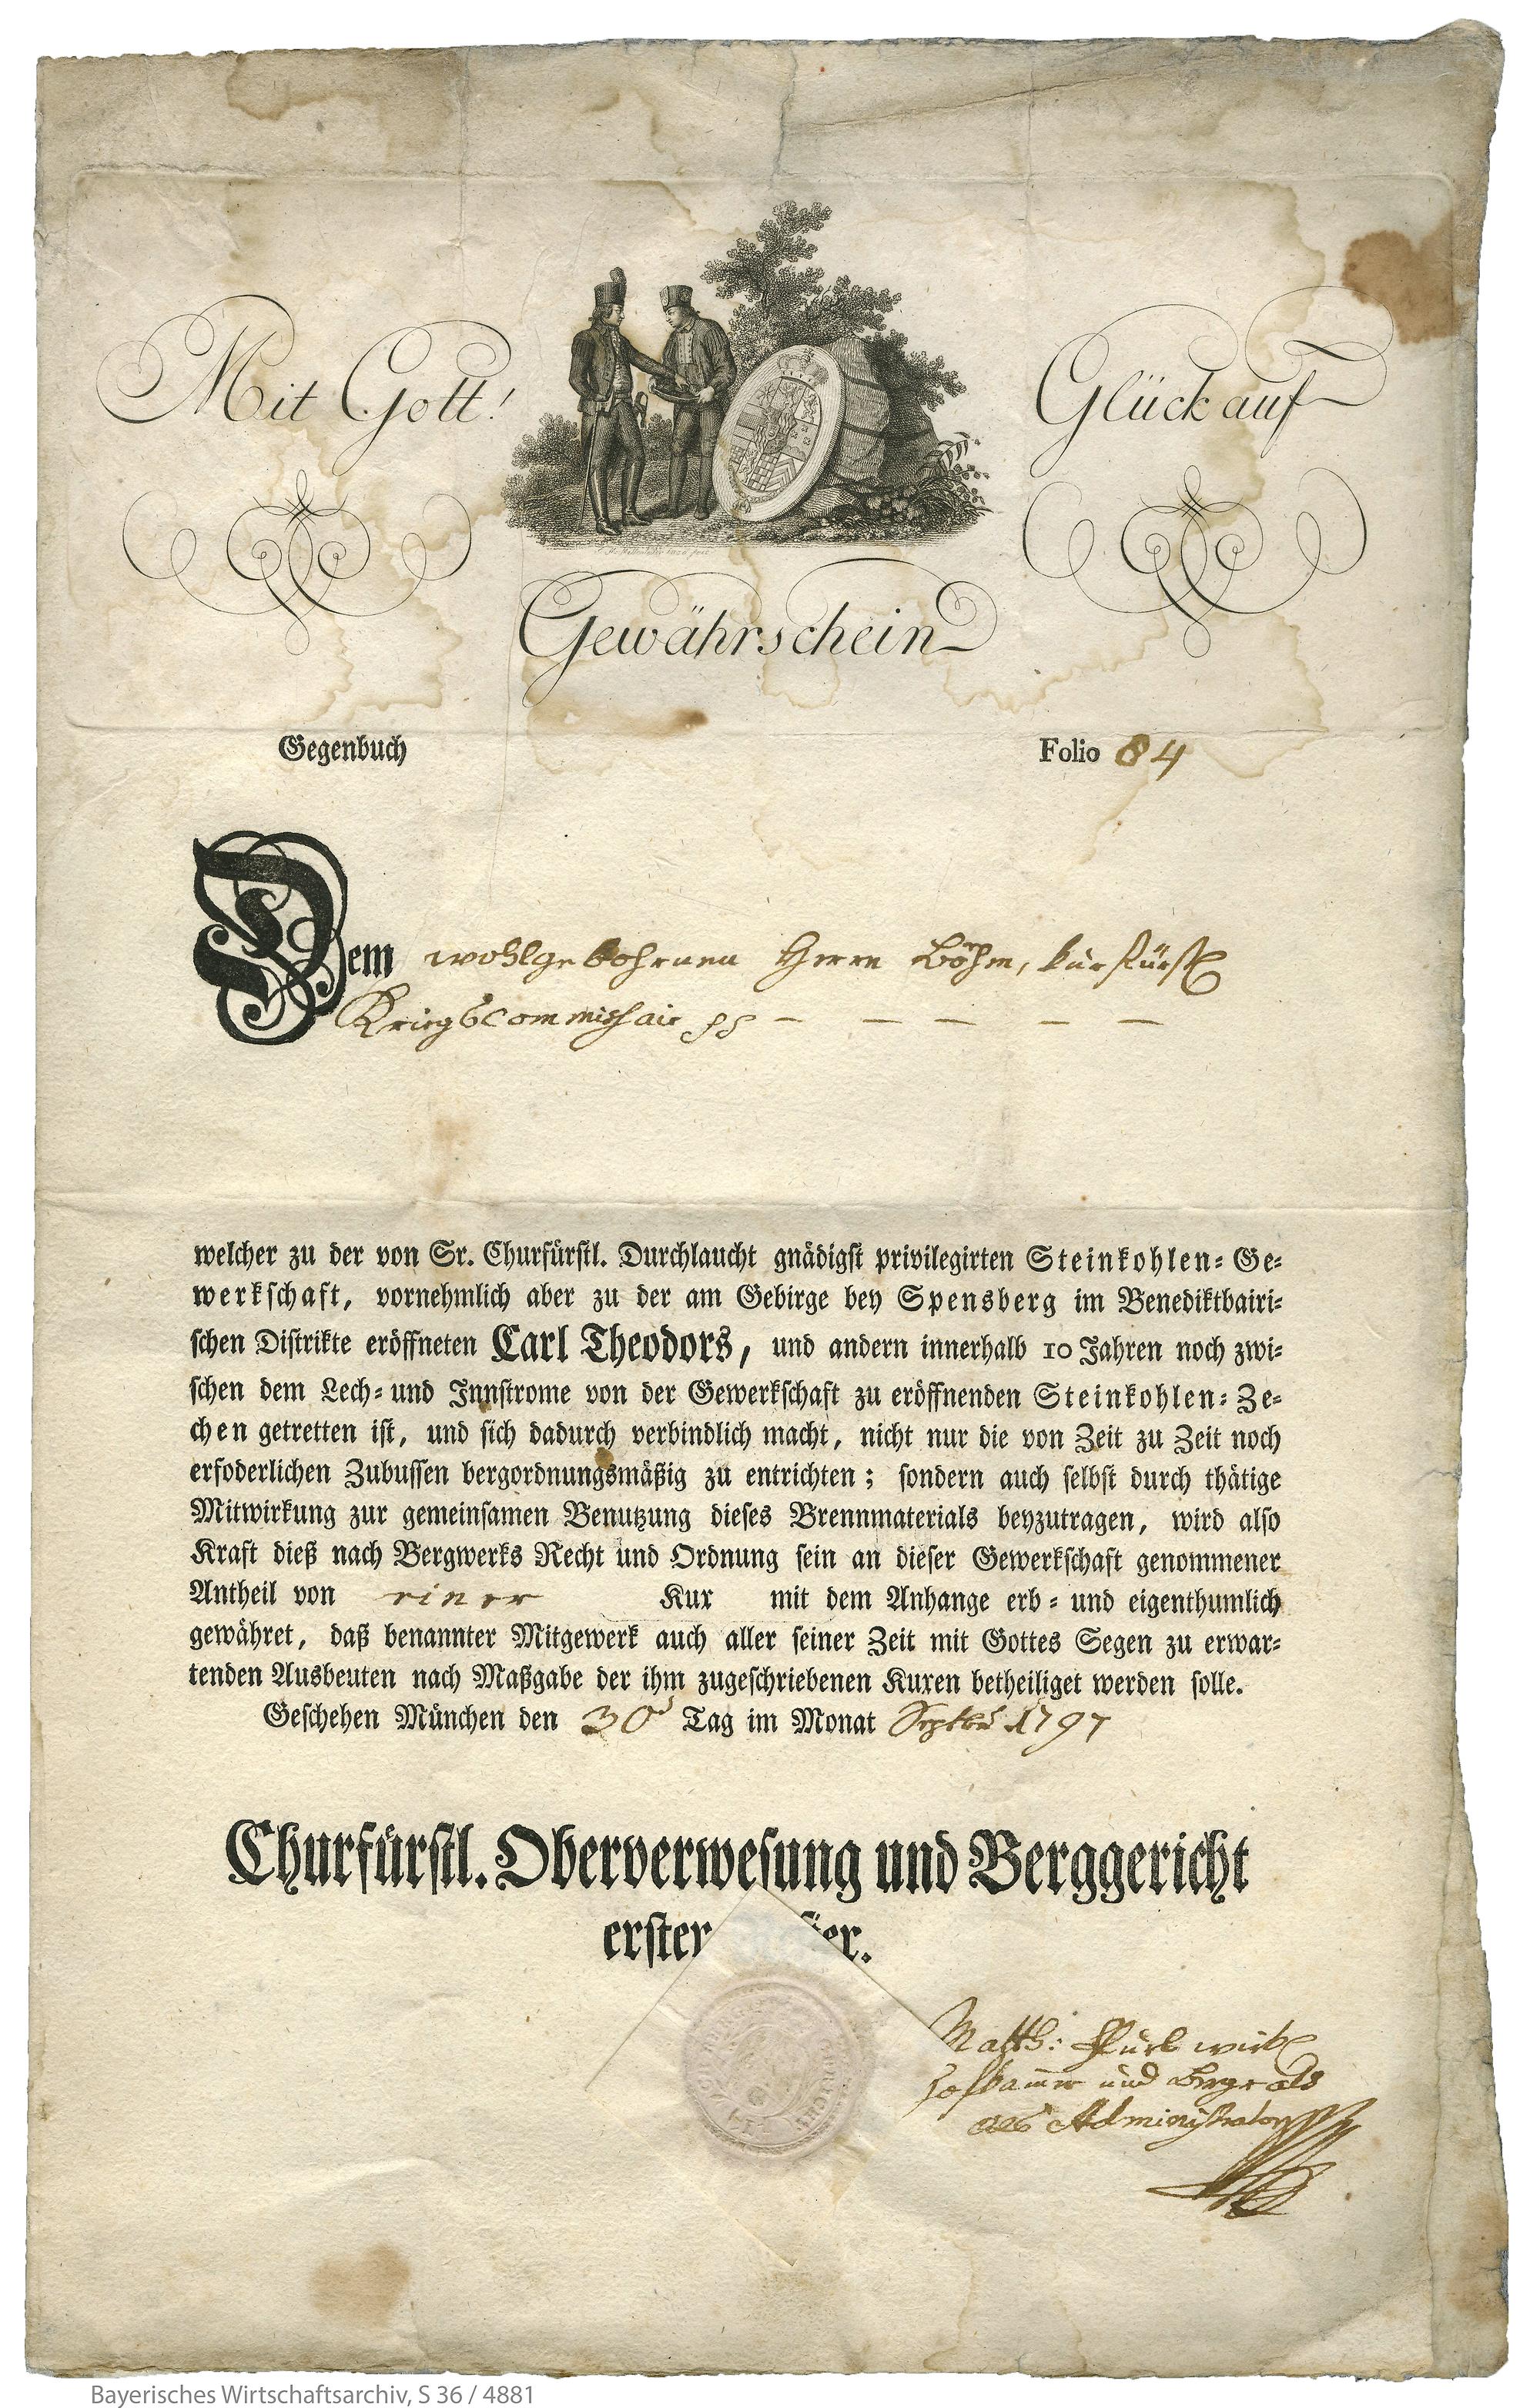 Das älteste bekannte bayerische Wertpapier: Der Anteilschein der Carl-Theodor-Zeche in Penzberg mit der Unterschrift des Berg- und Münzrats Matthias von Flurl, 1797